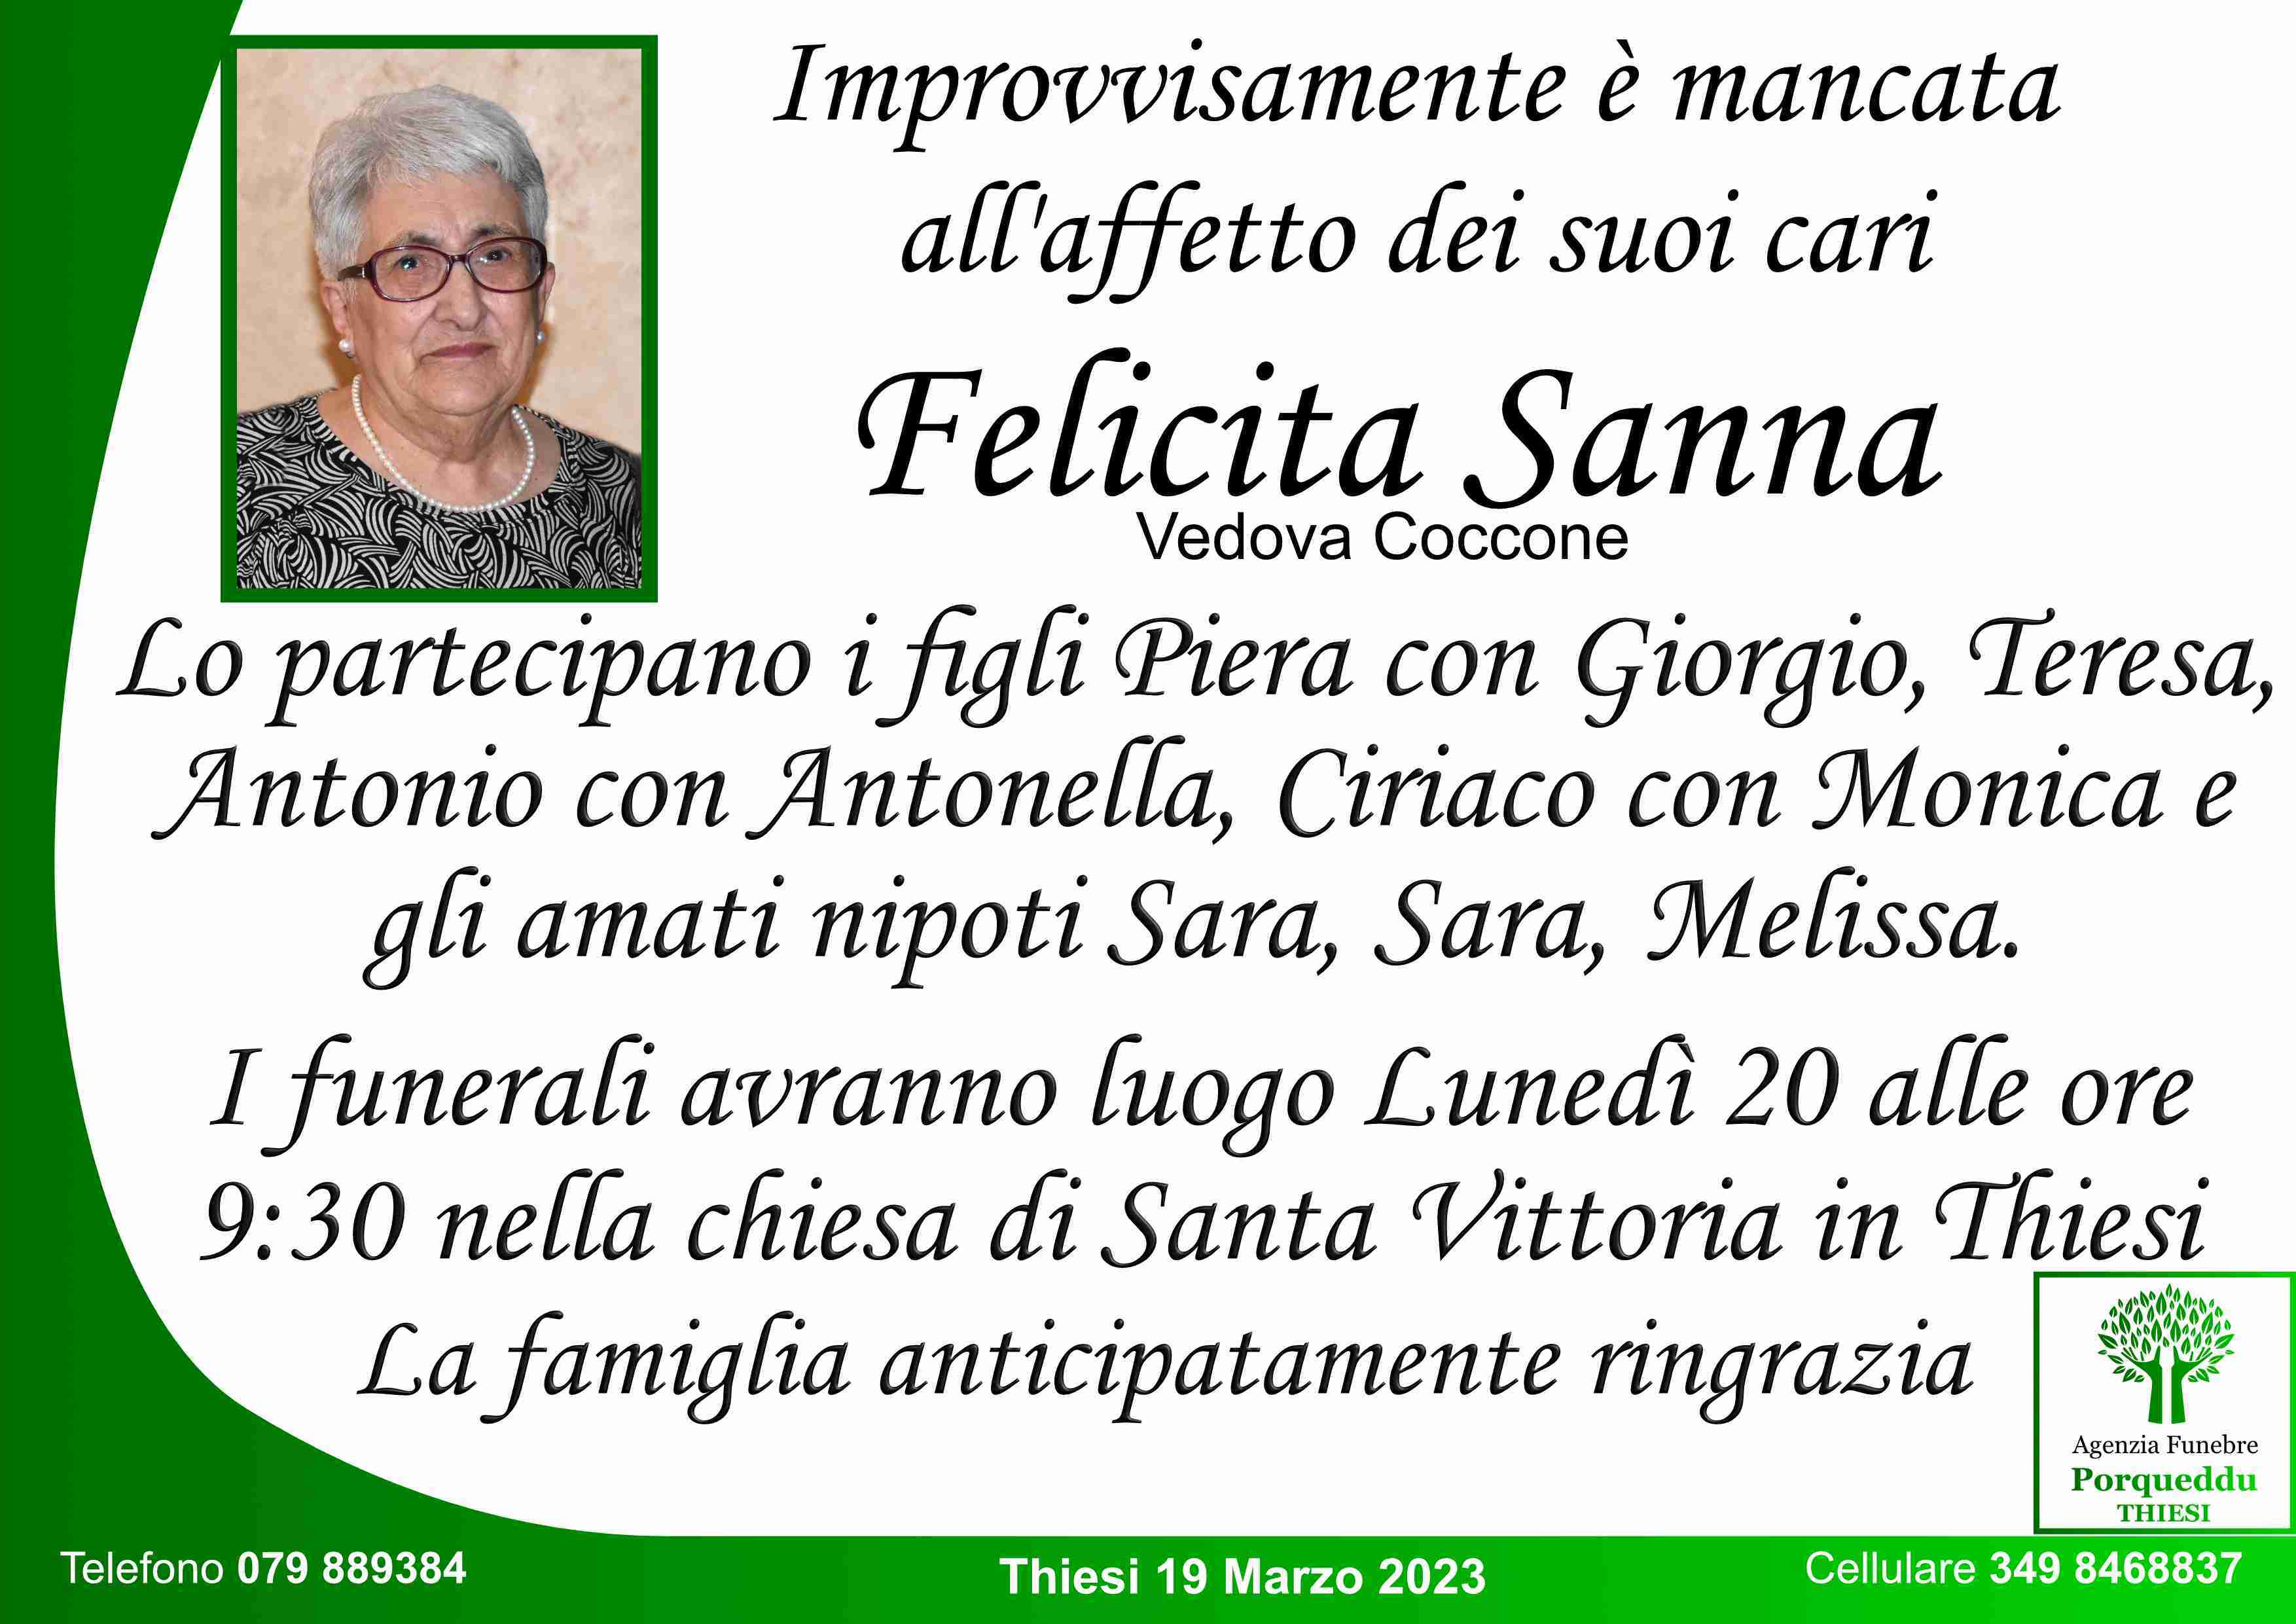 Felicita Sanna